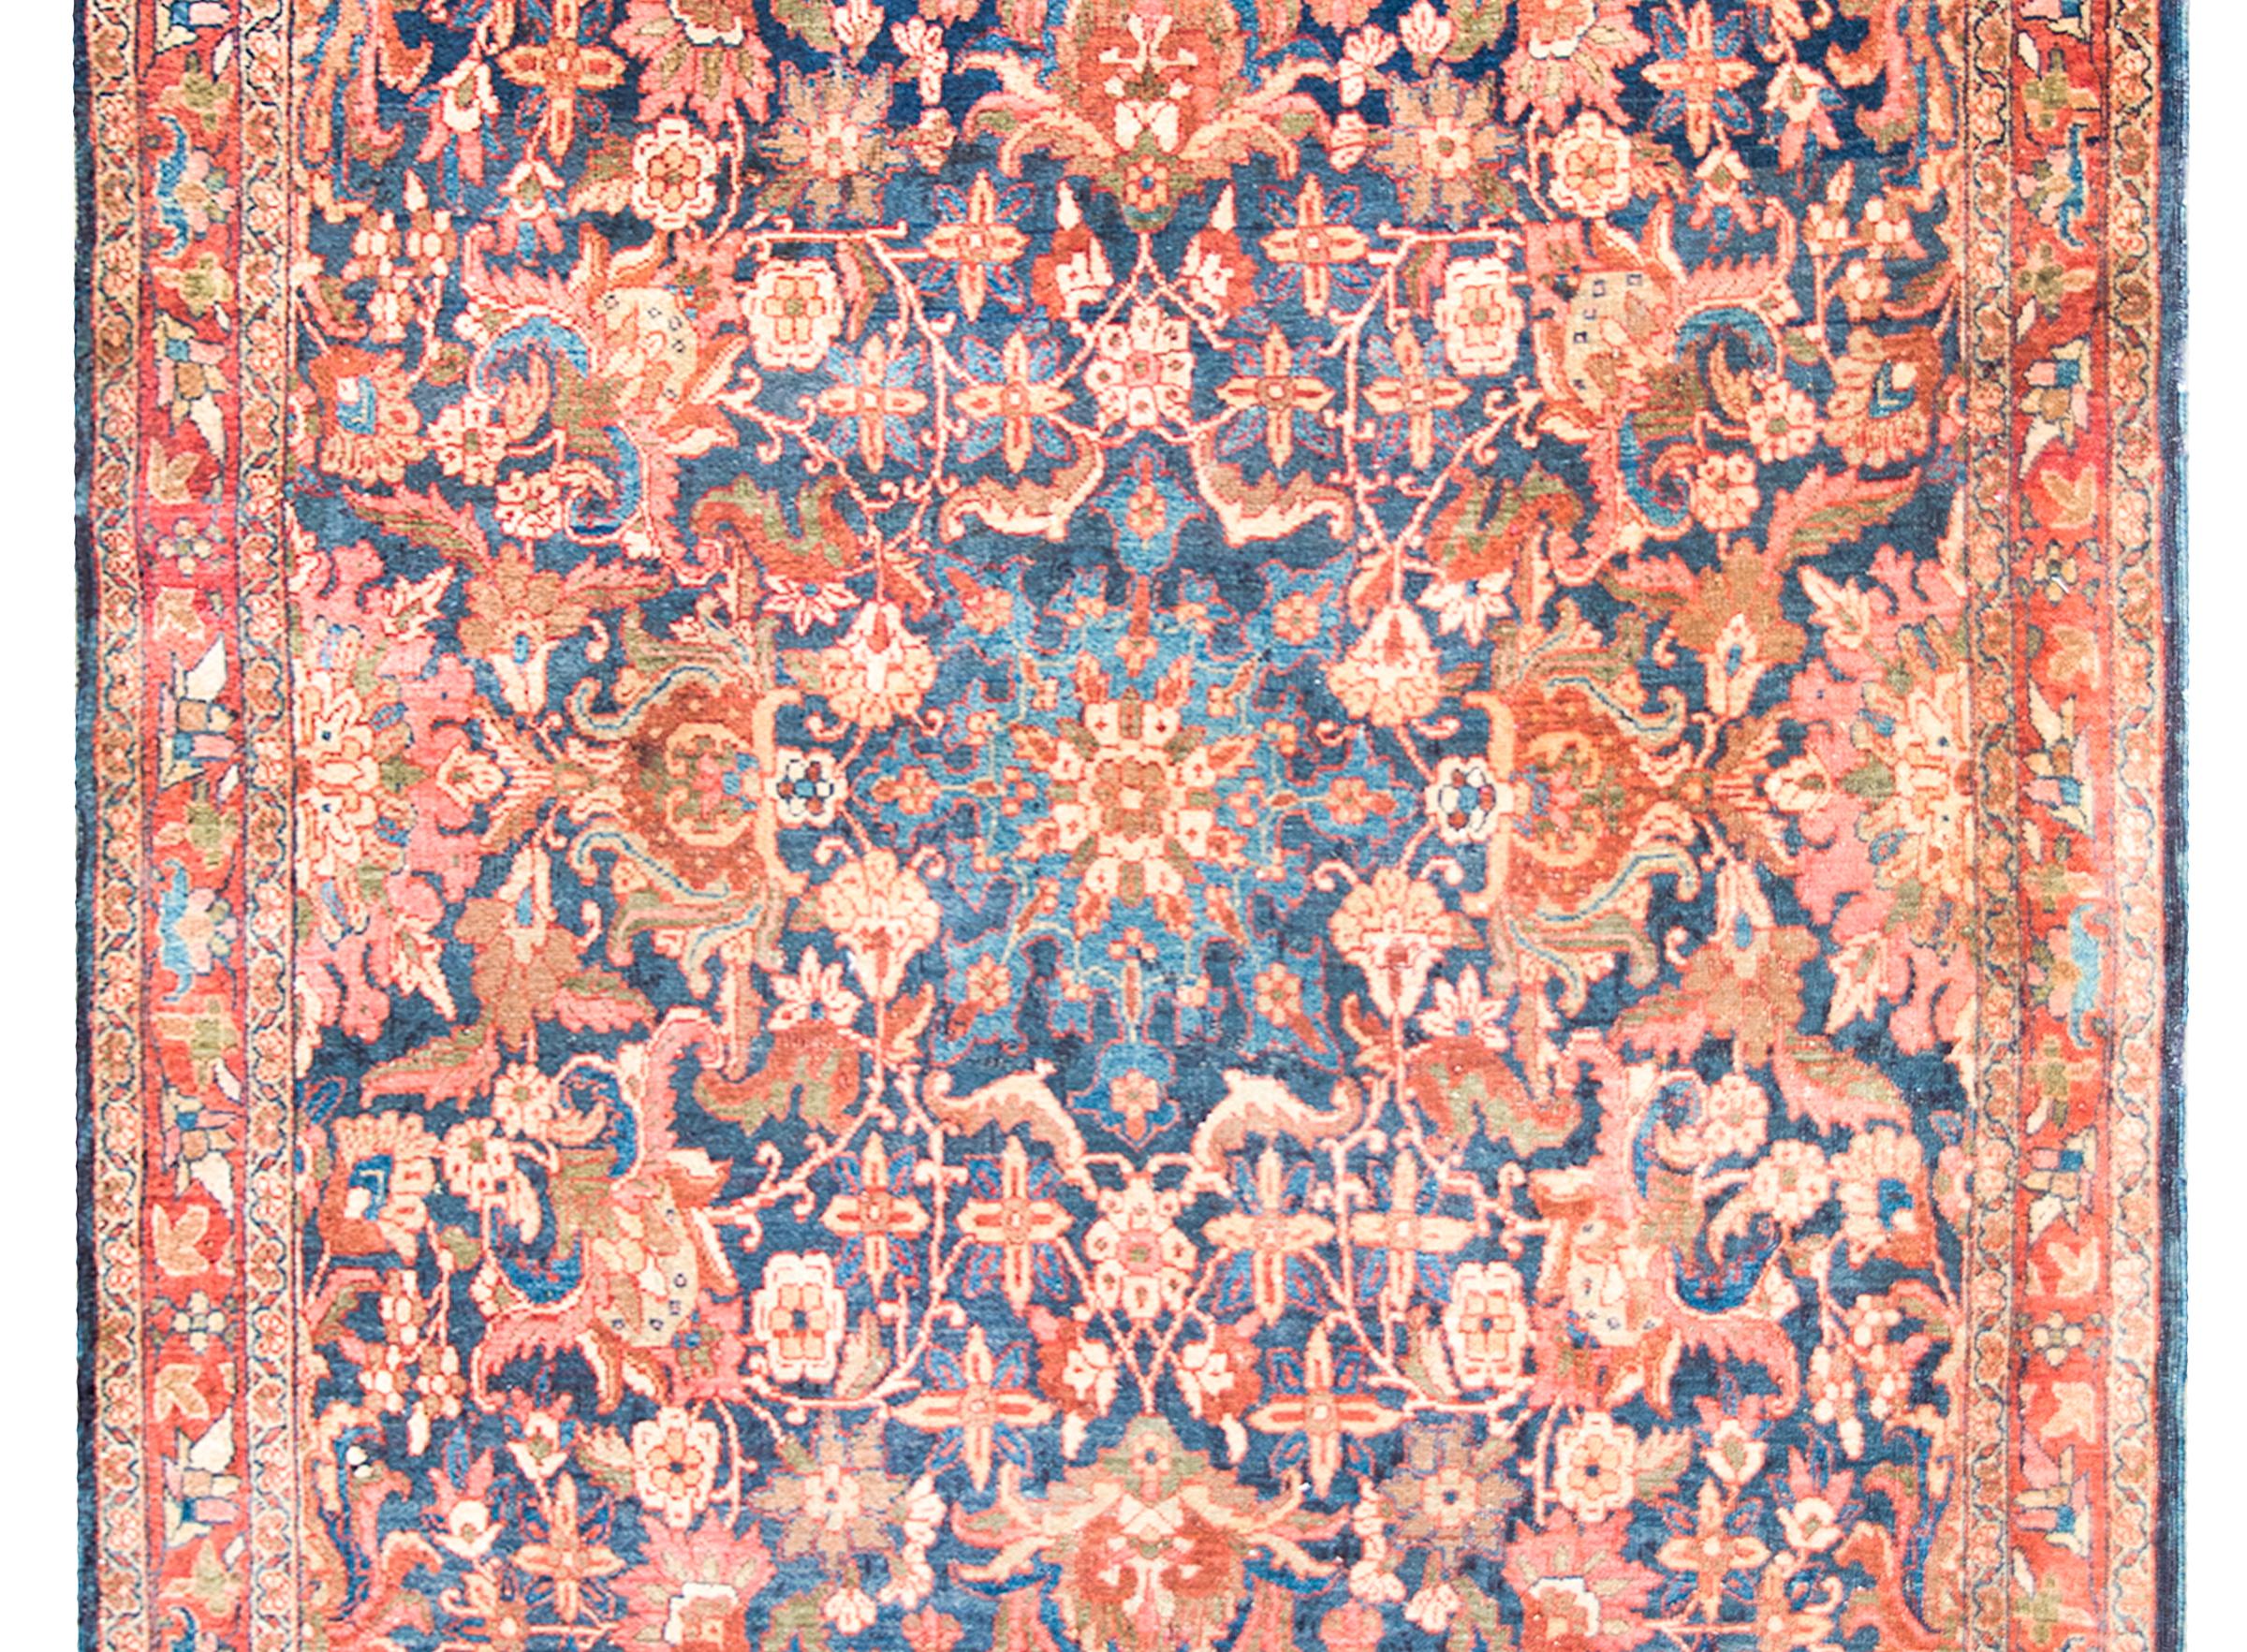 Superbe tapis persan Meshkabad du début du 20e siècle présentant un incroyable motif avec un grand médaillon floral central vivant au milieu d'un champ de fleurs densément tissées et de vignes enroulées, et entouré d'une bordure complexe avec une